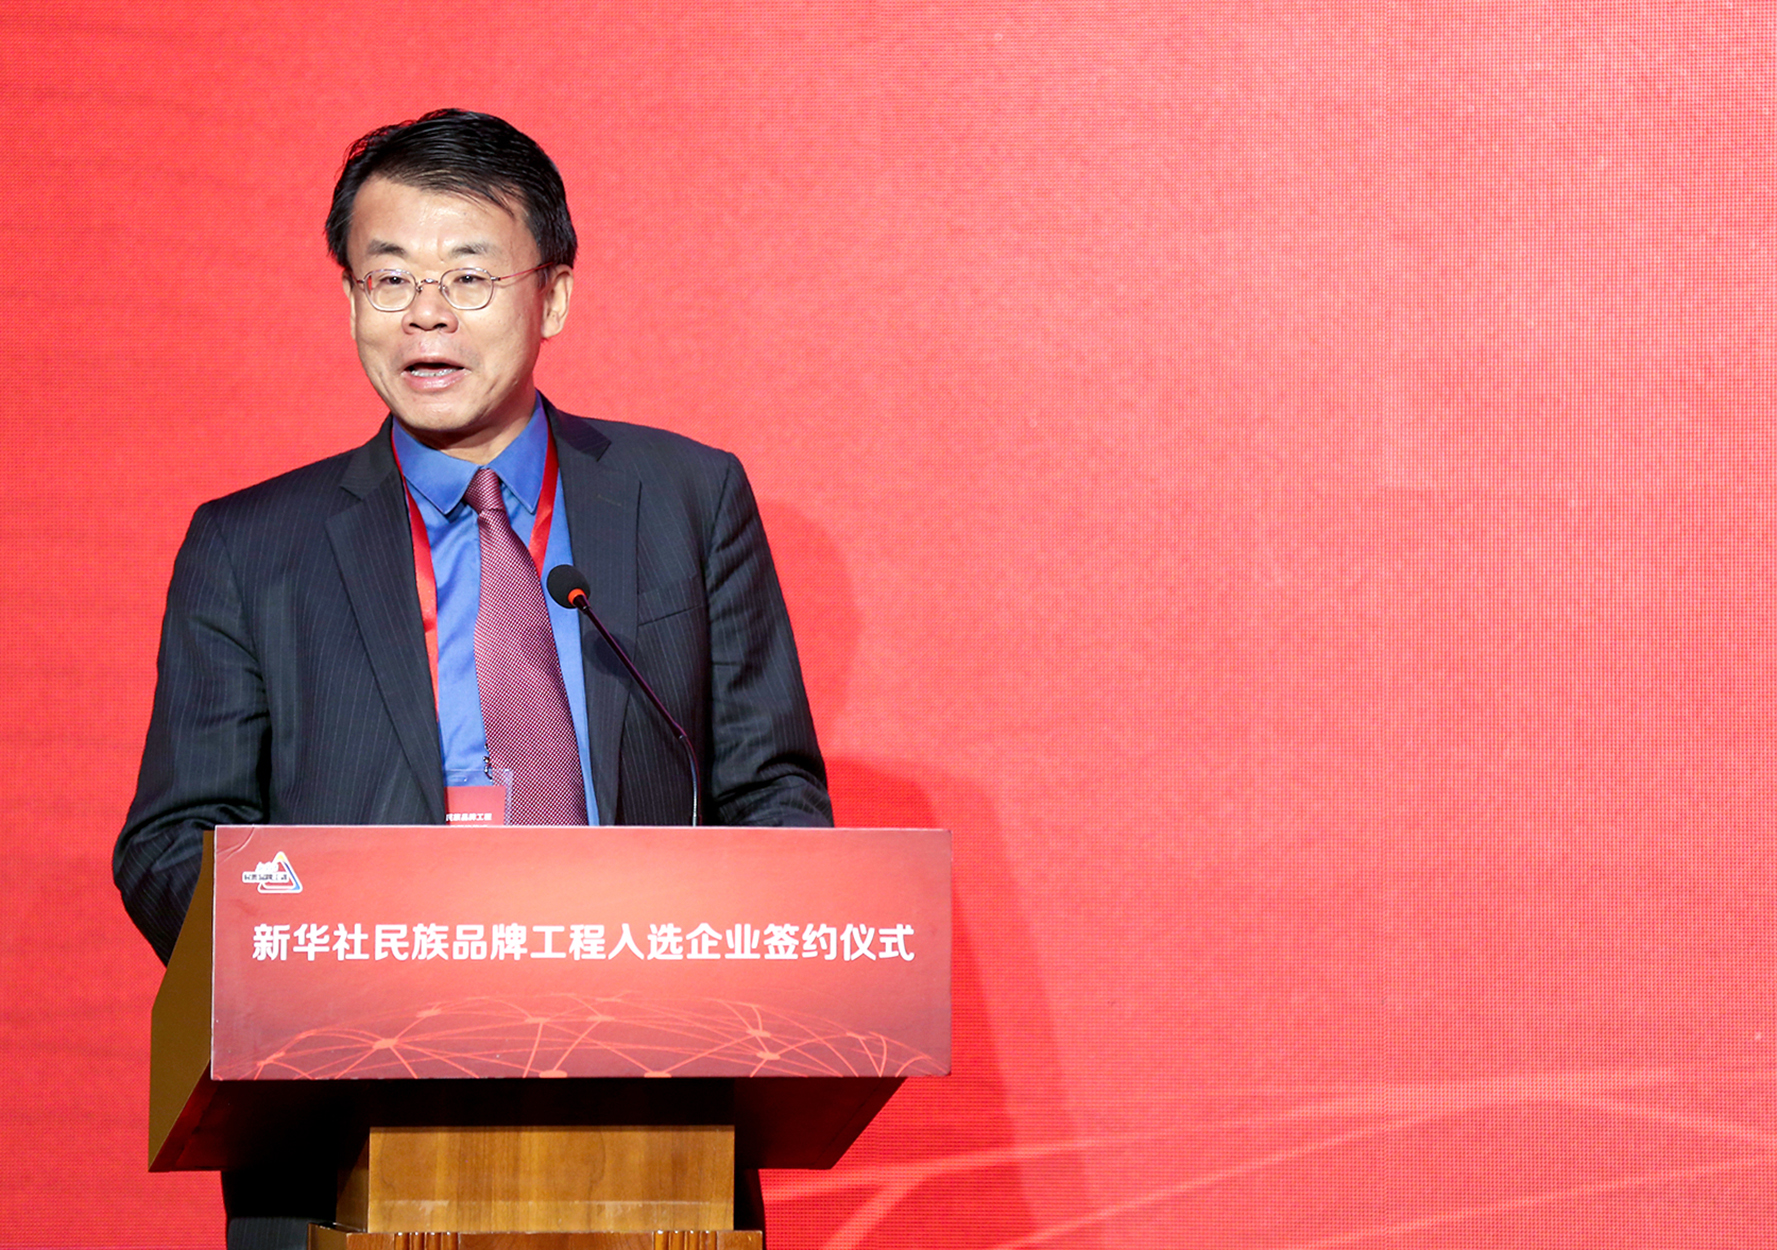 清华大学新闻传播学院副院长史安斌教授致辞。